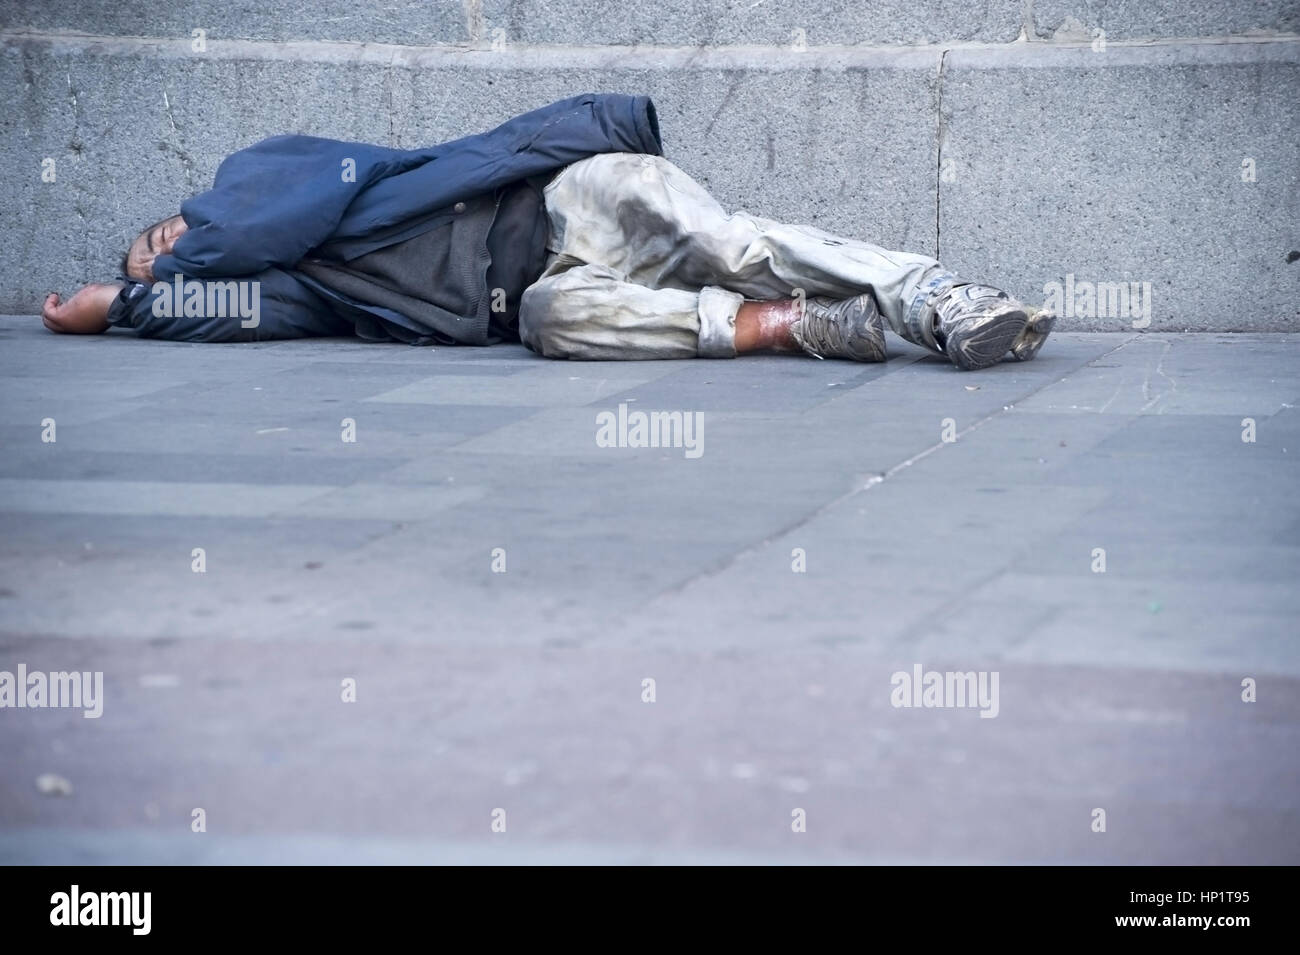 Obdachloser liegt am Gehsteig - calle persona Foto de stock